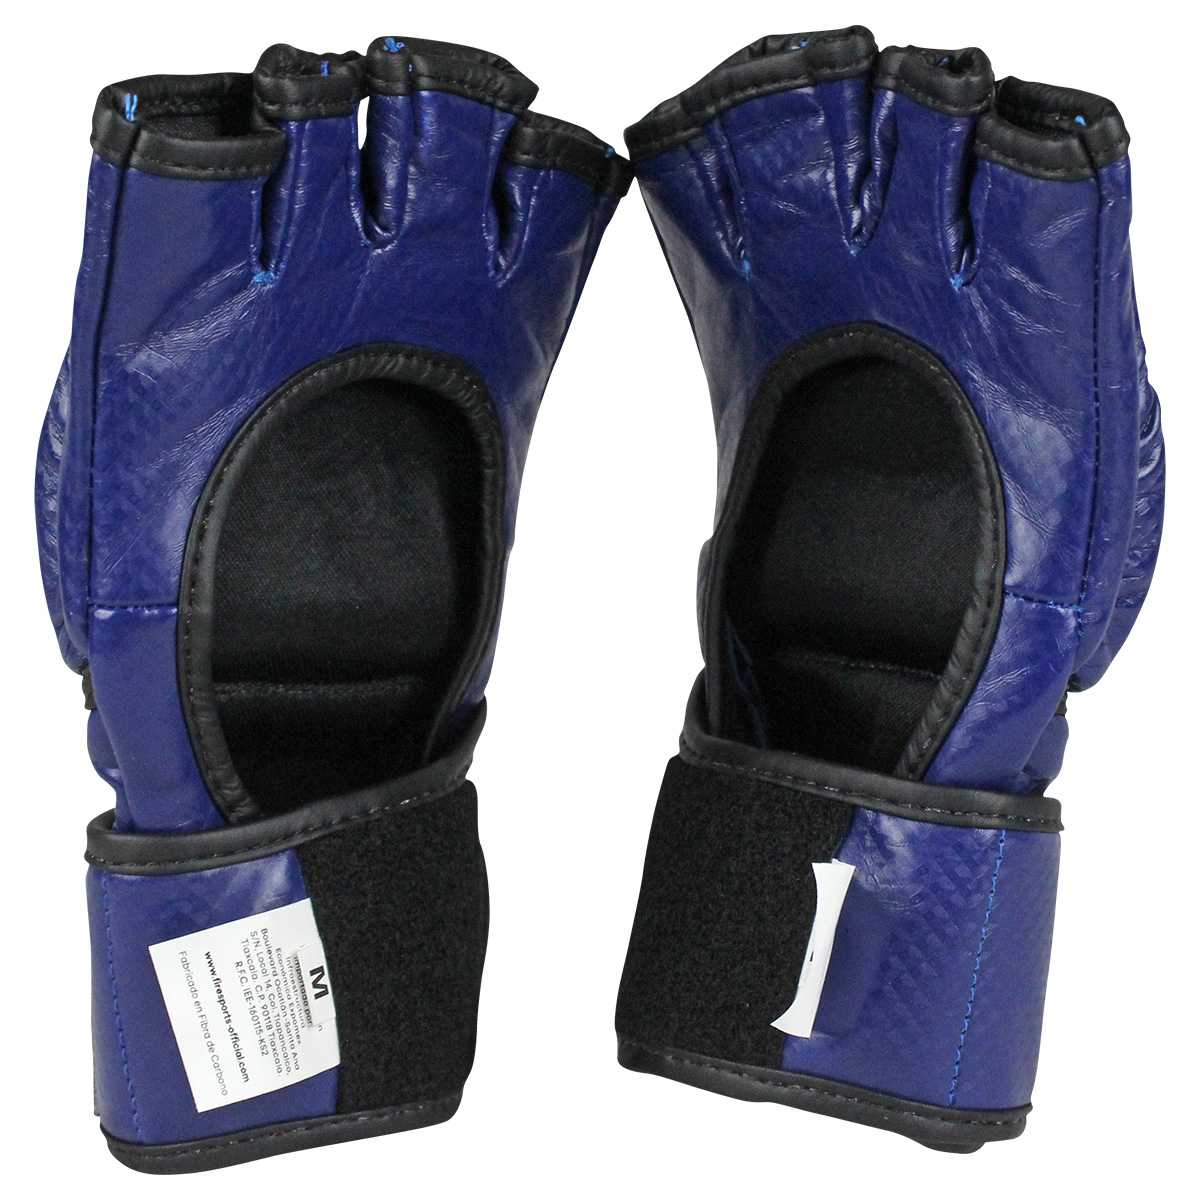 Guantes de Box INFANTIL de PVC Fire Sports color Azul – Fire Sports